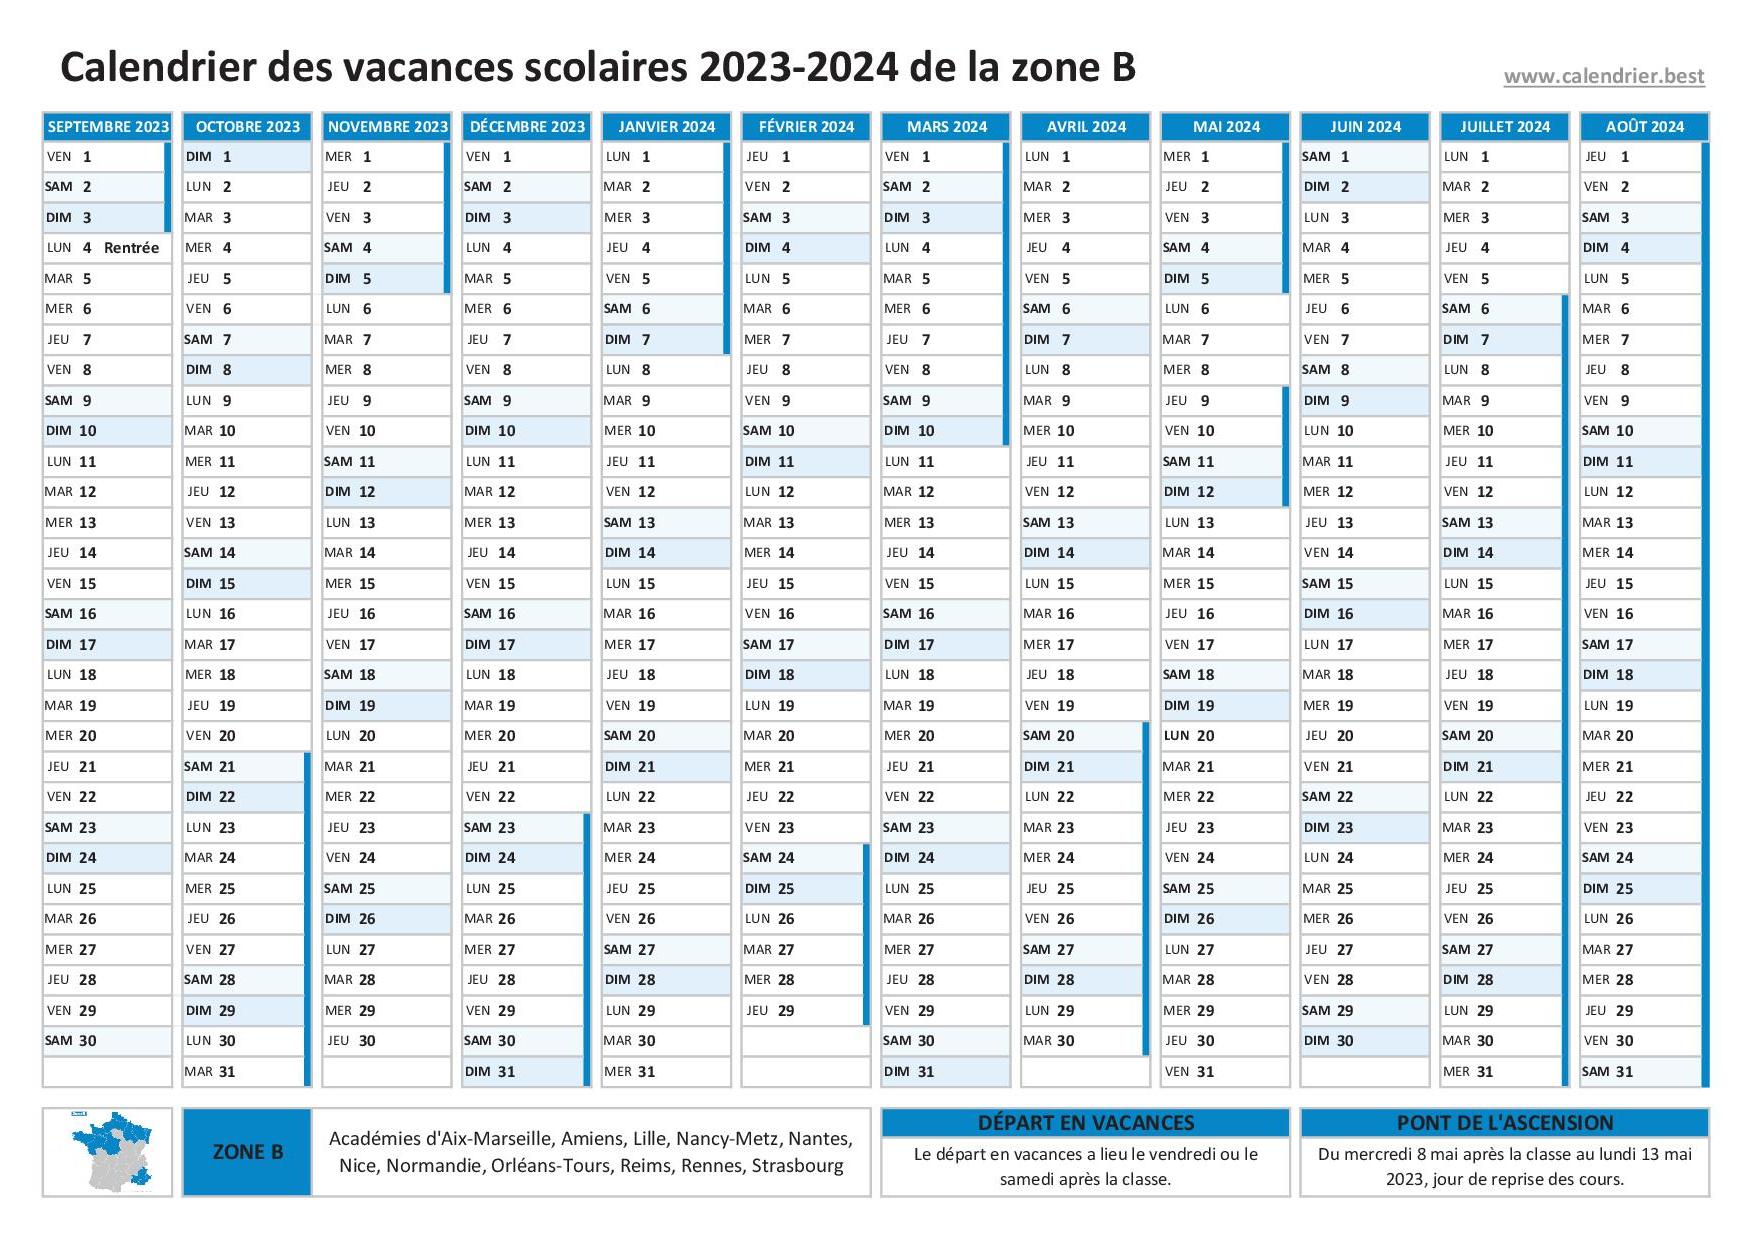 Calendrier Scolaire 2023-2024 - 19x13 cm - Août 2023 À Décembre